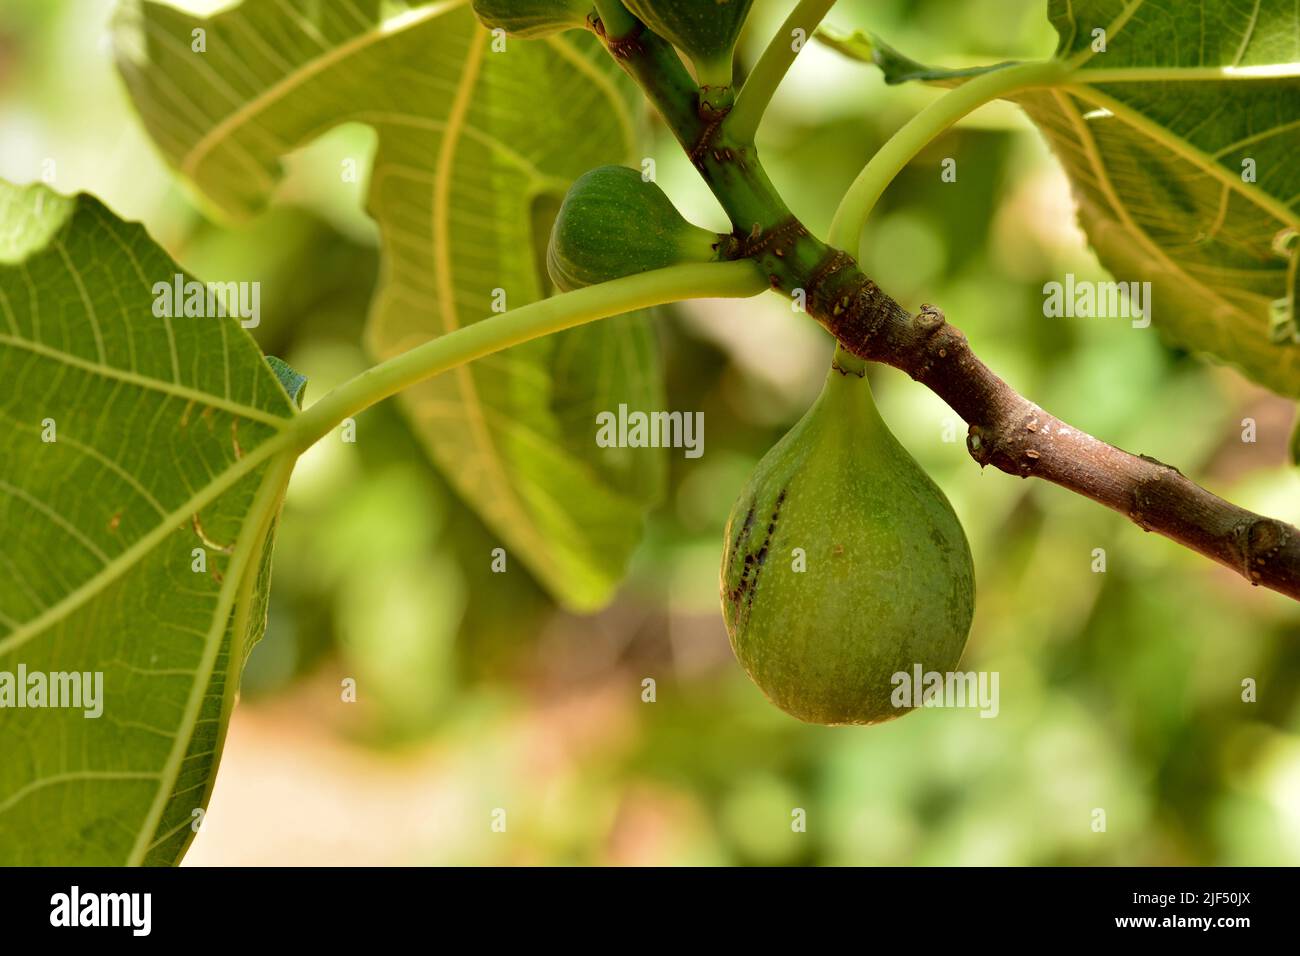 Detalle de los frutos de la higuera, ficus carica, en su árbol en verano Foto Stock